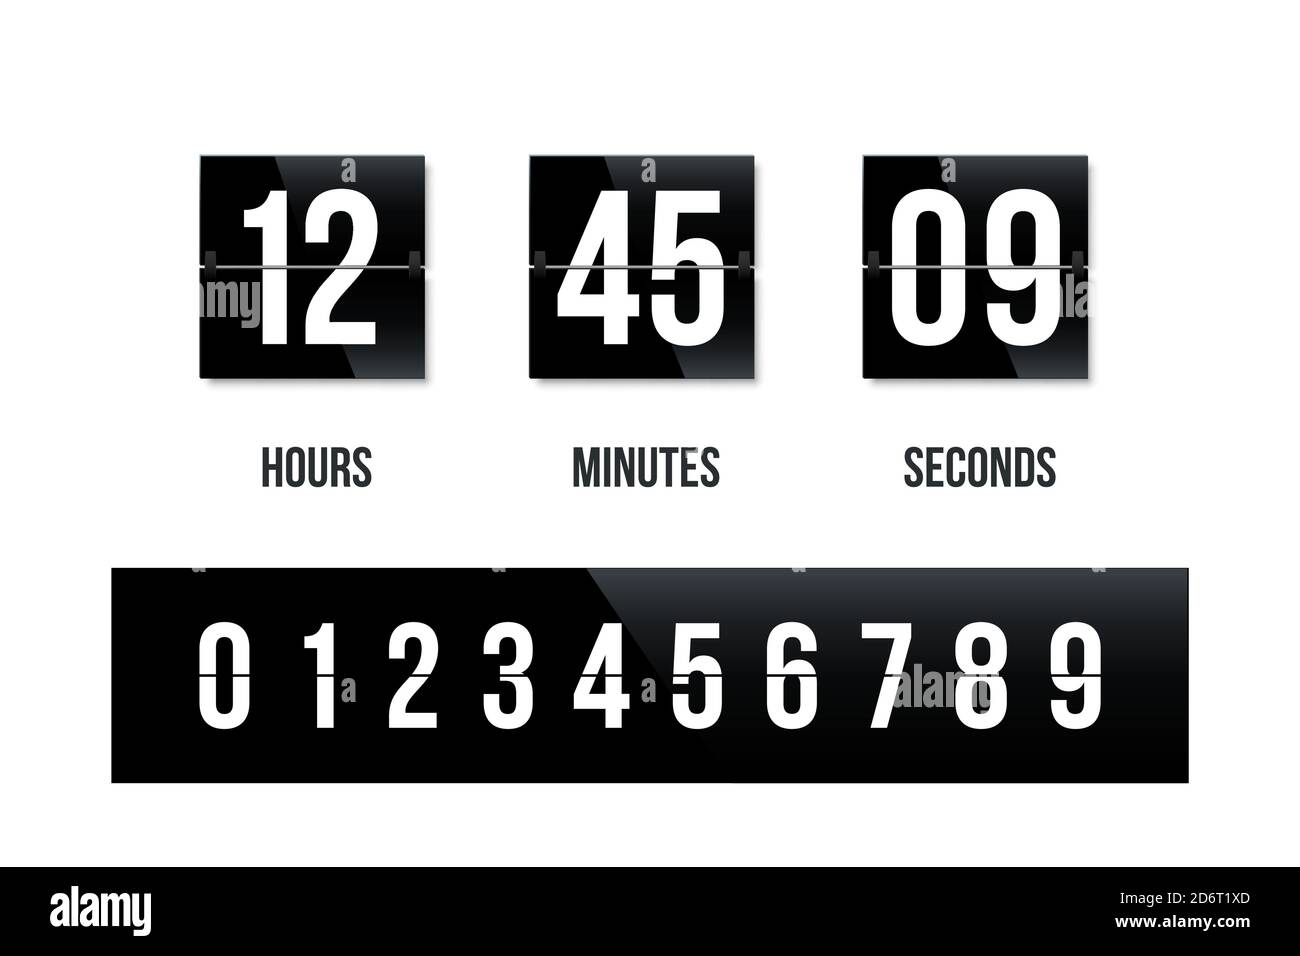 Flipboard schwarze Uhr-Panel mit Zahl Countdown. Moderne Zähleranzeige für Zeitvektordarstellung. Verbleibende Stunden, Minuten, Sekunden auf dem Display Stock Vektor